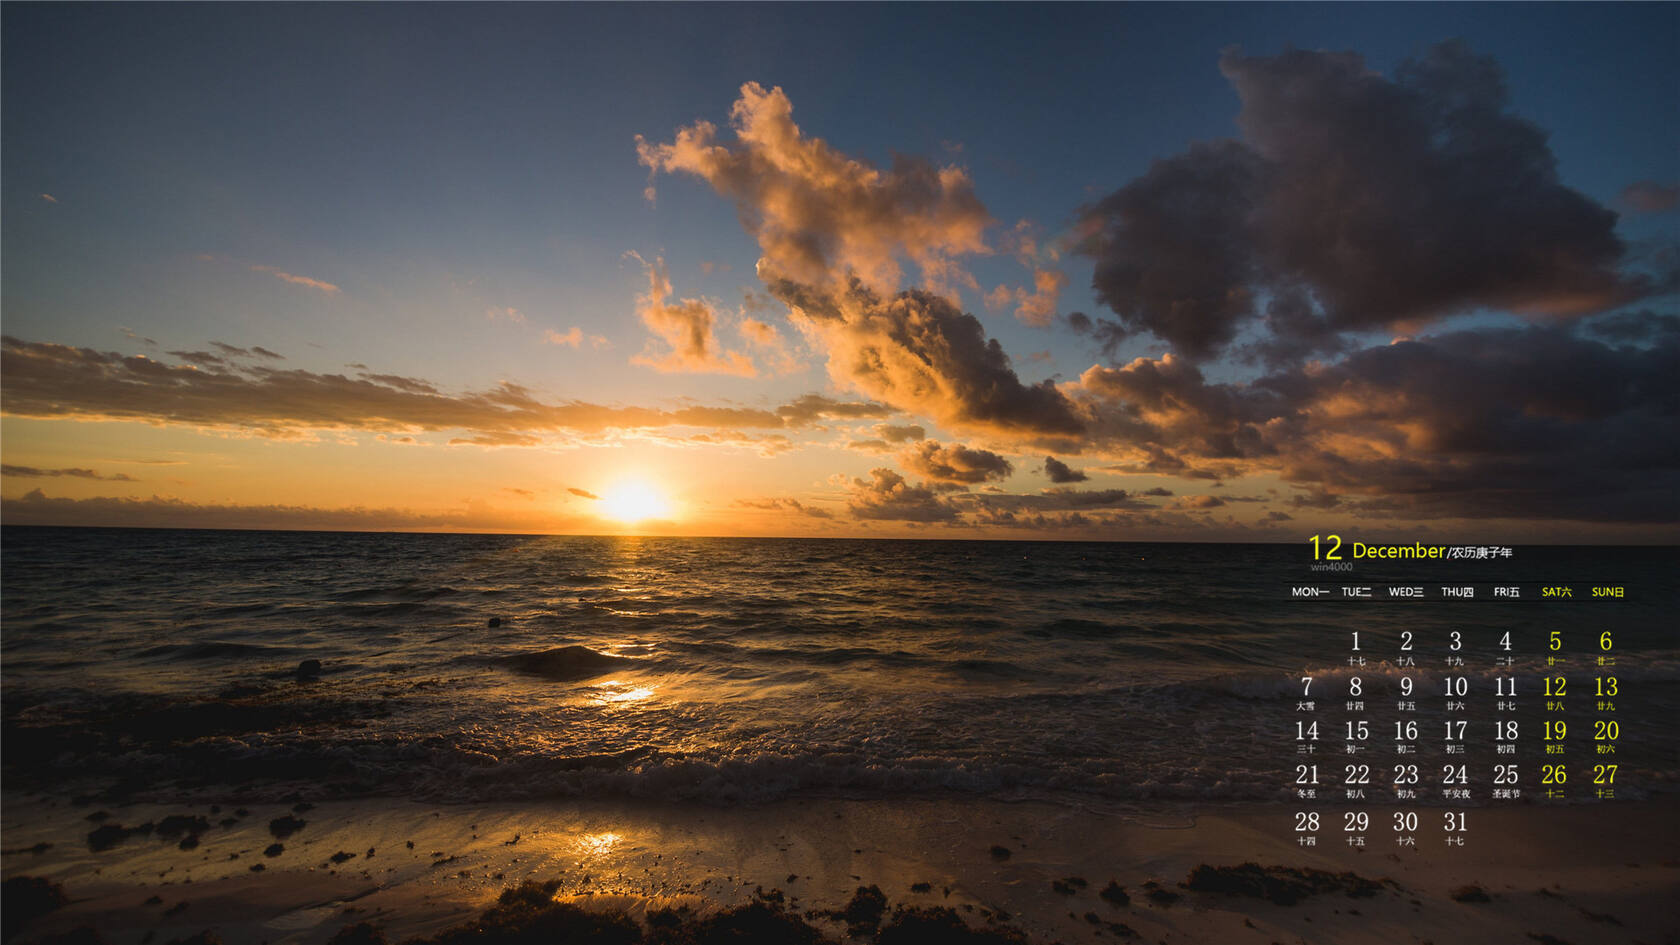 大海，海浪，沙滩，云彩，阳光，2020年12月大海主题系列高清壁纸图片套图1